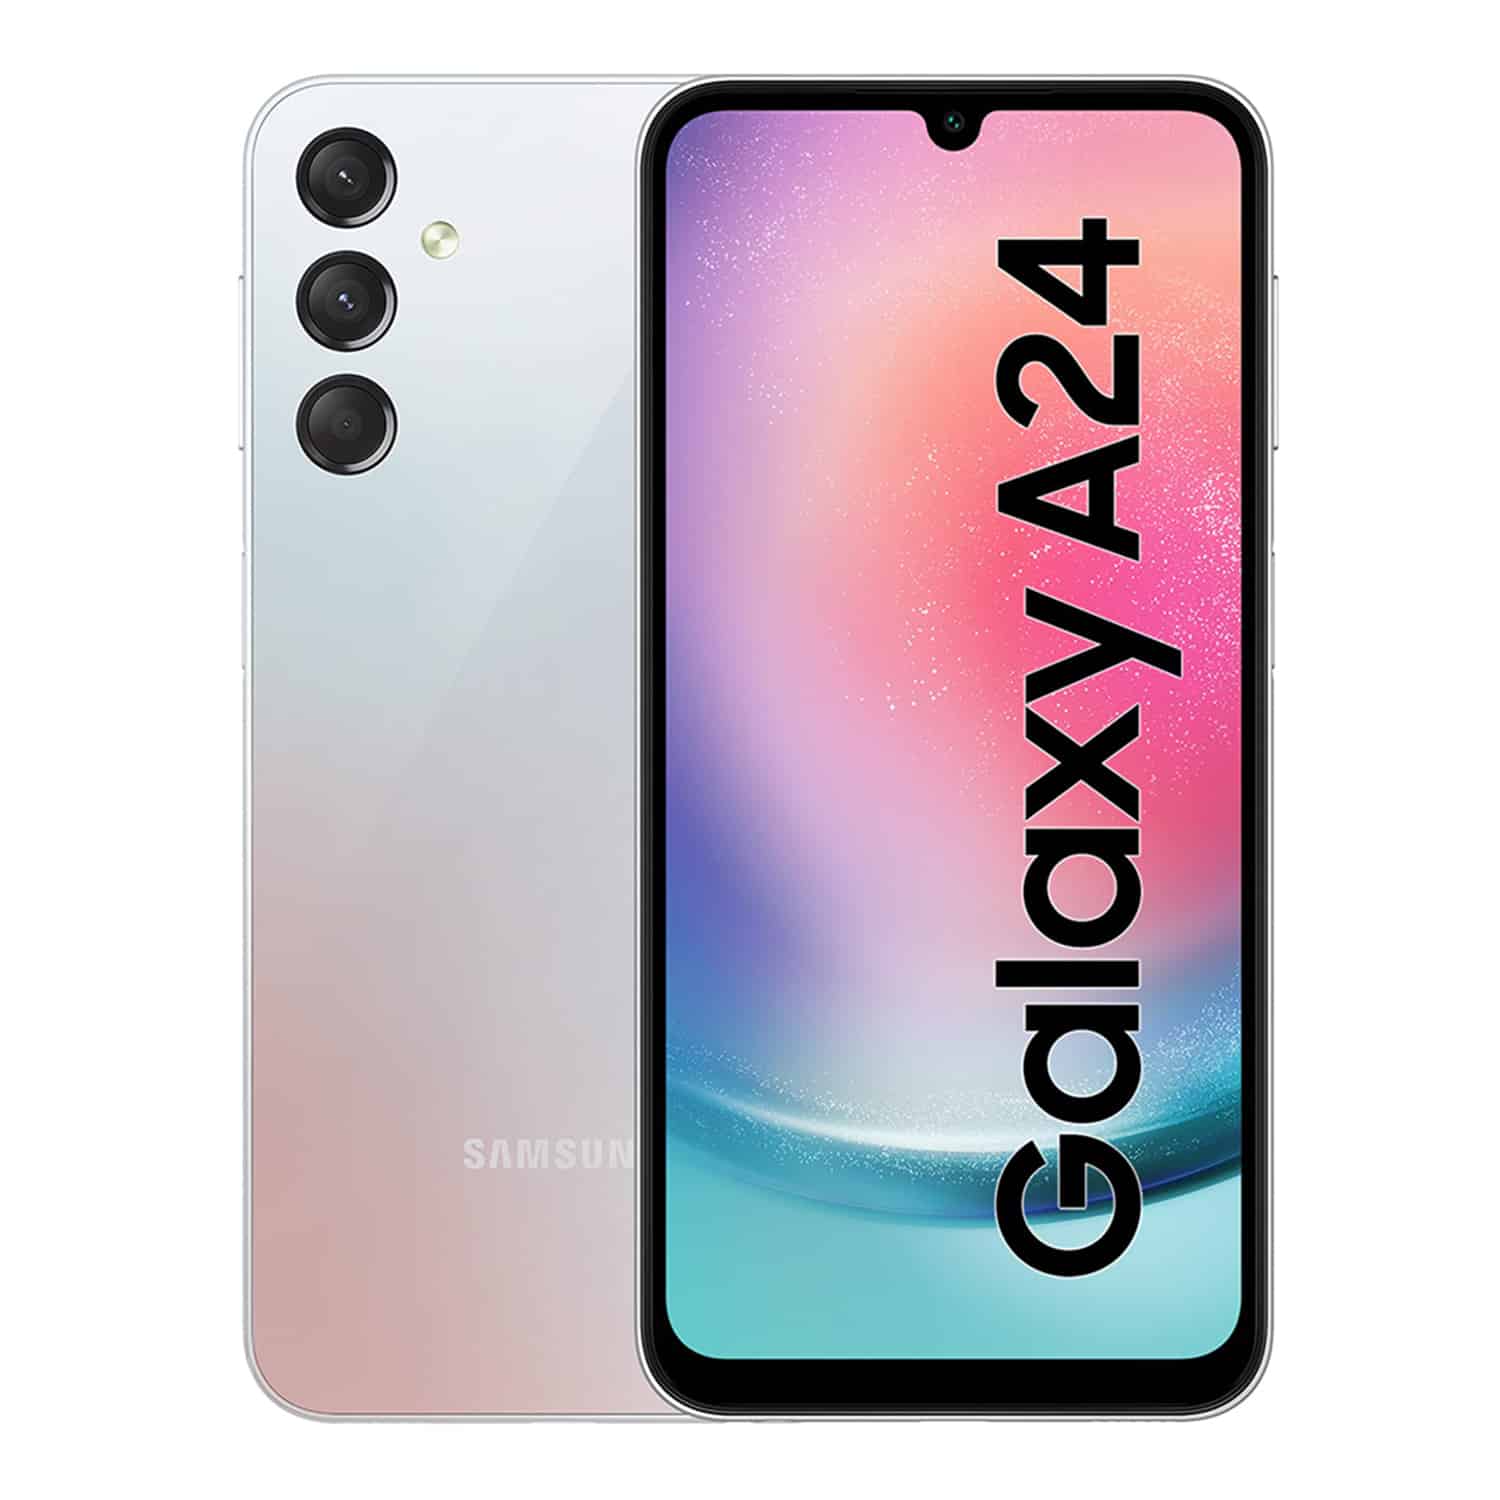 Samsung a commencé à mettre à jour la tablette économique Galaxy